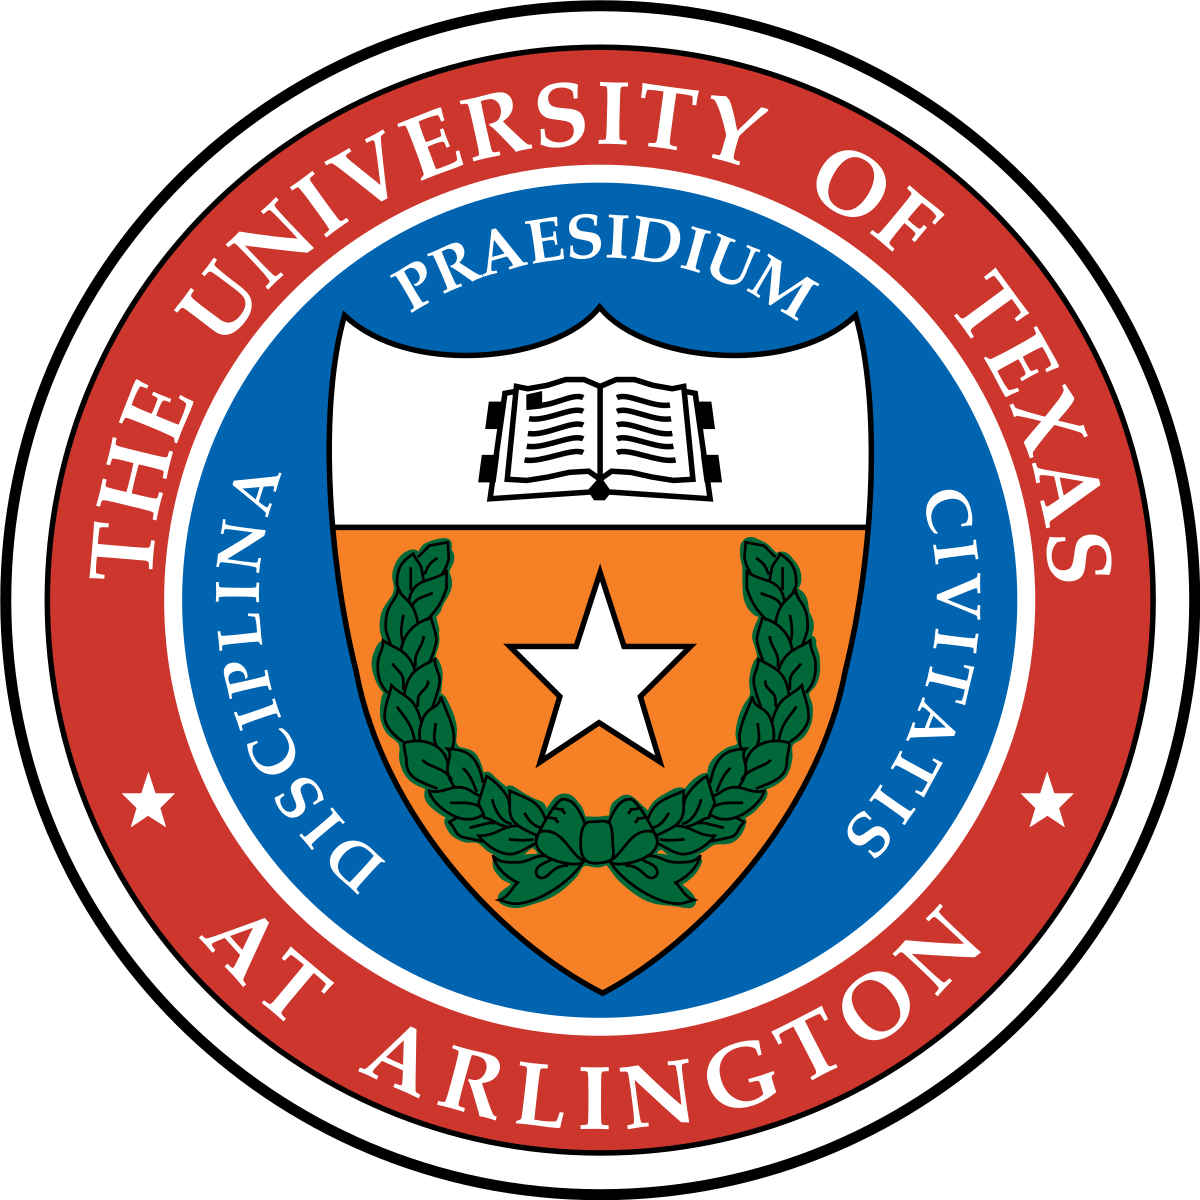 1200px-University_of_Texas_at_Arlington_seal.svg.png